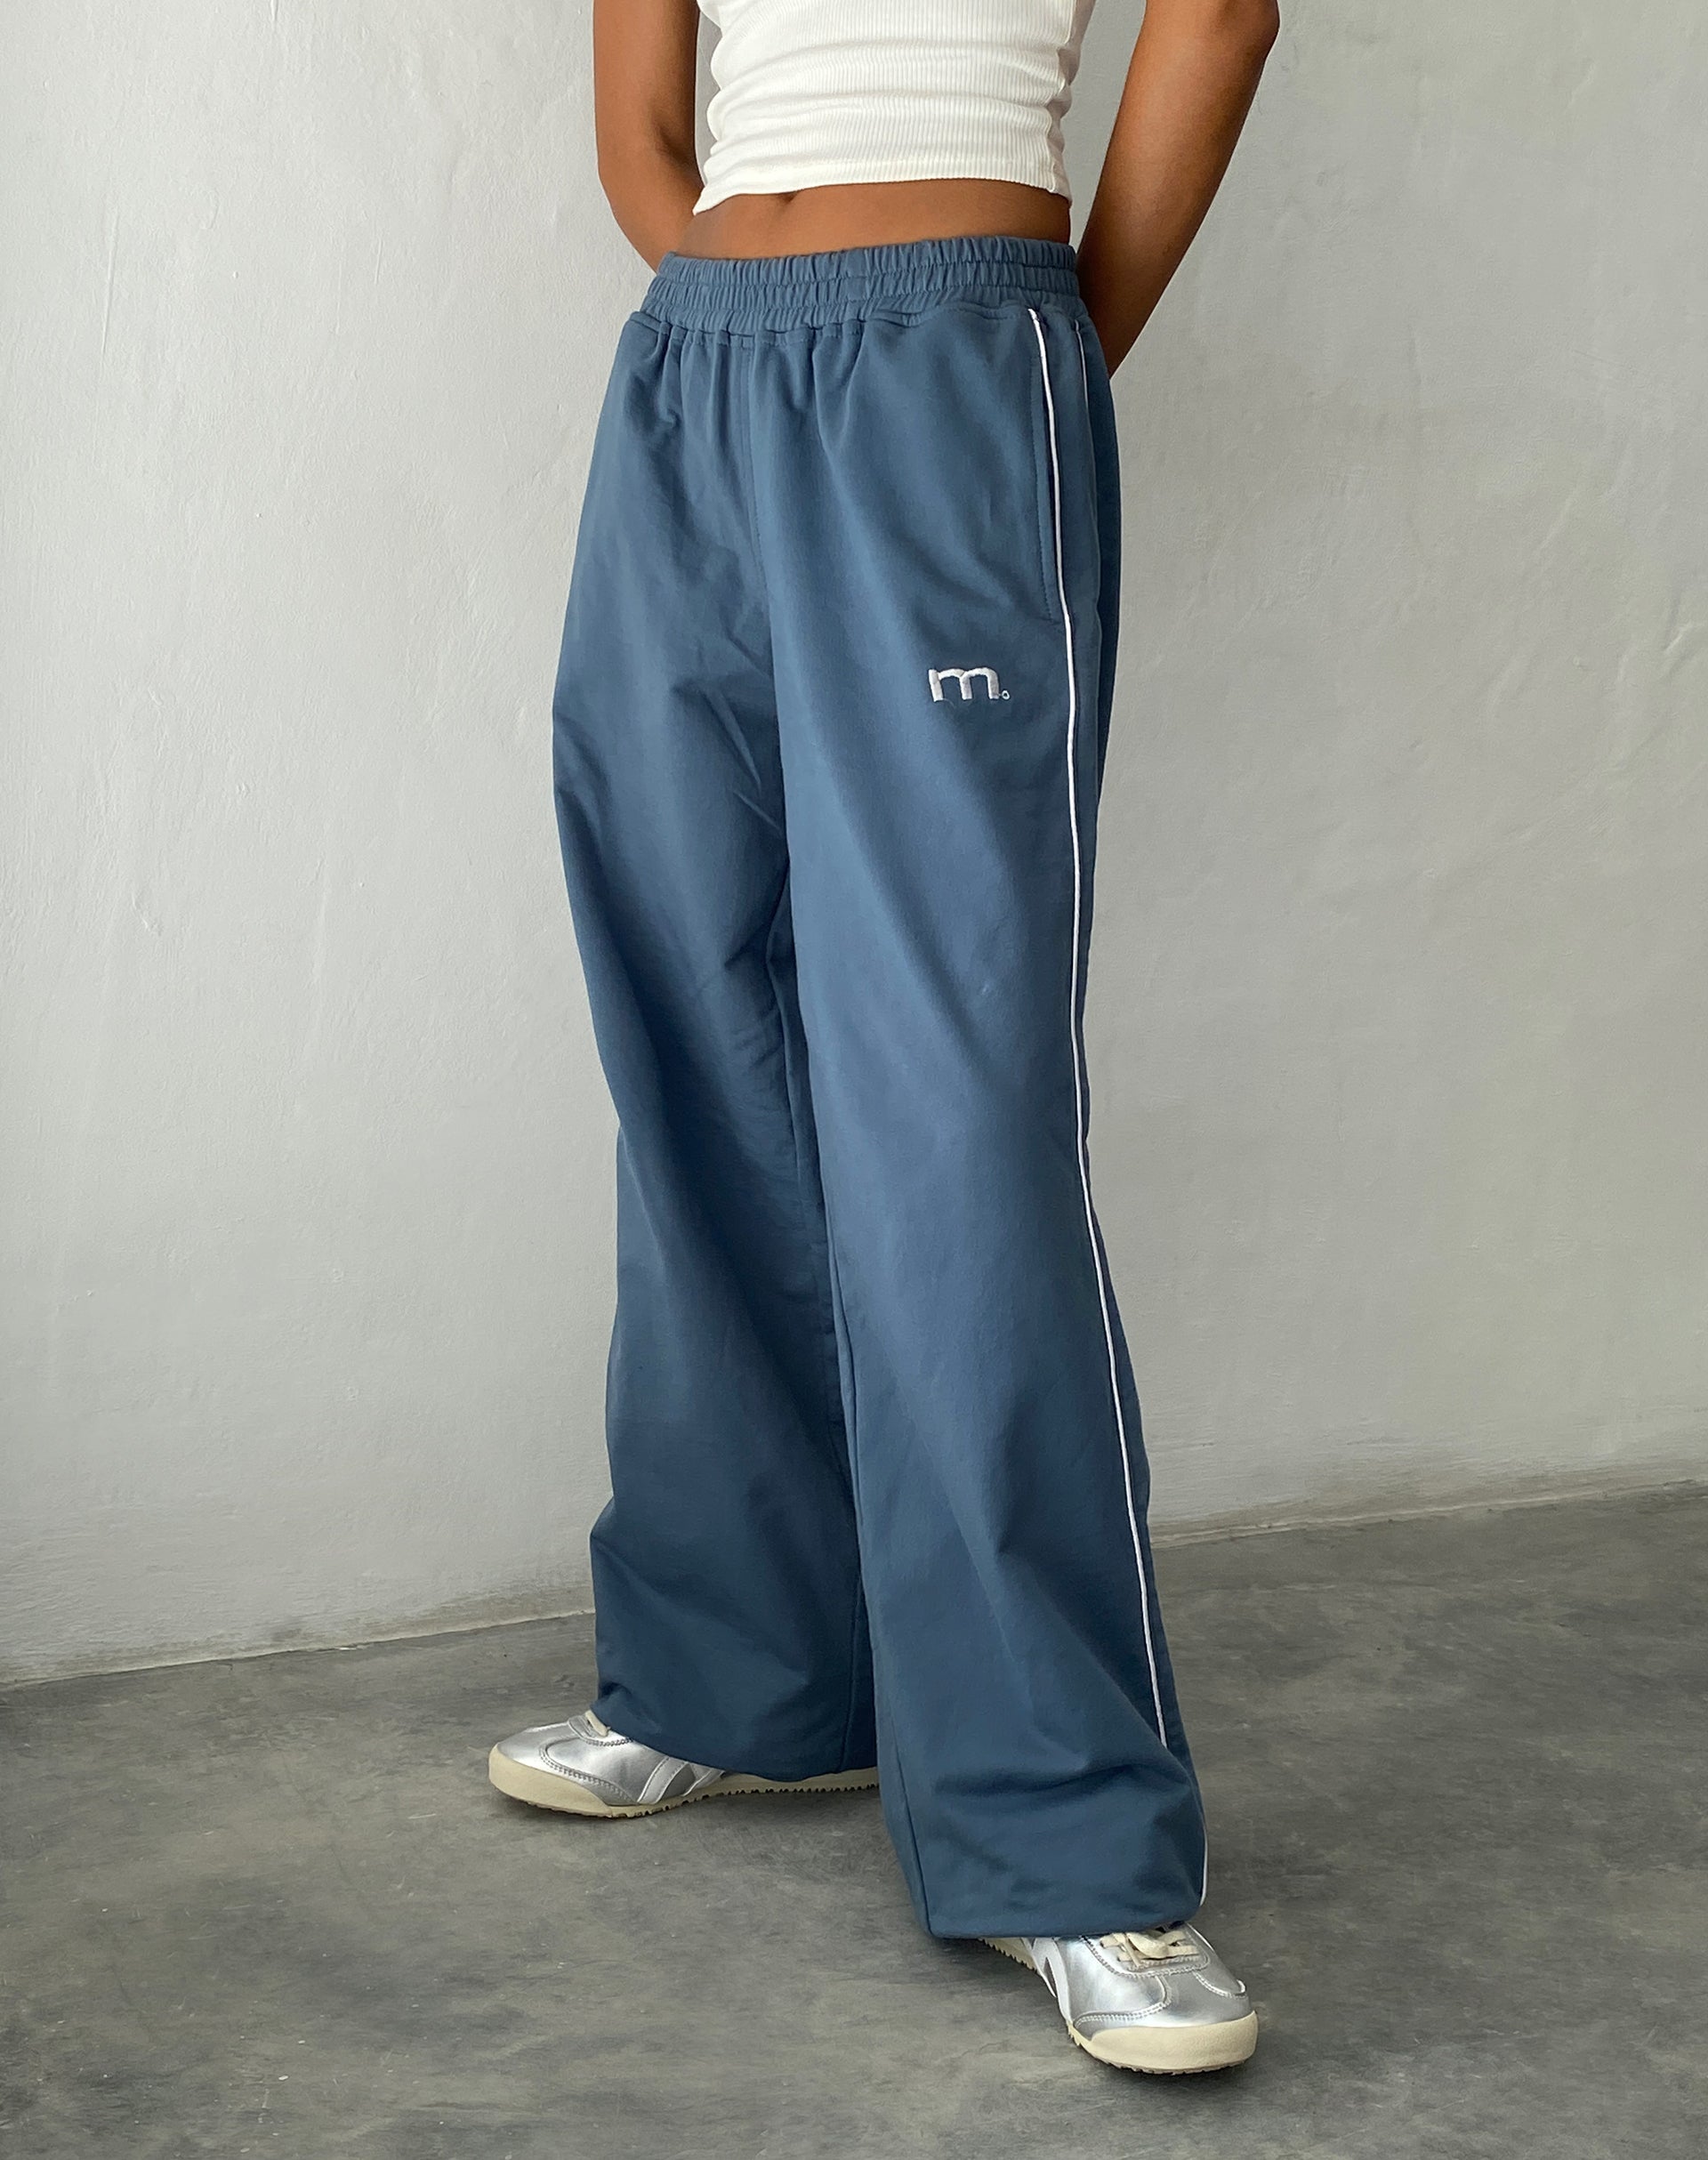 Vintage 90s Adidas Sweatpants Track Pants Navy Grey - Depop